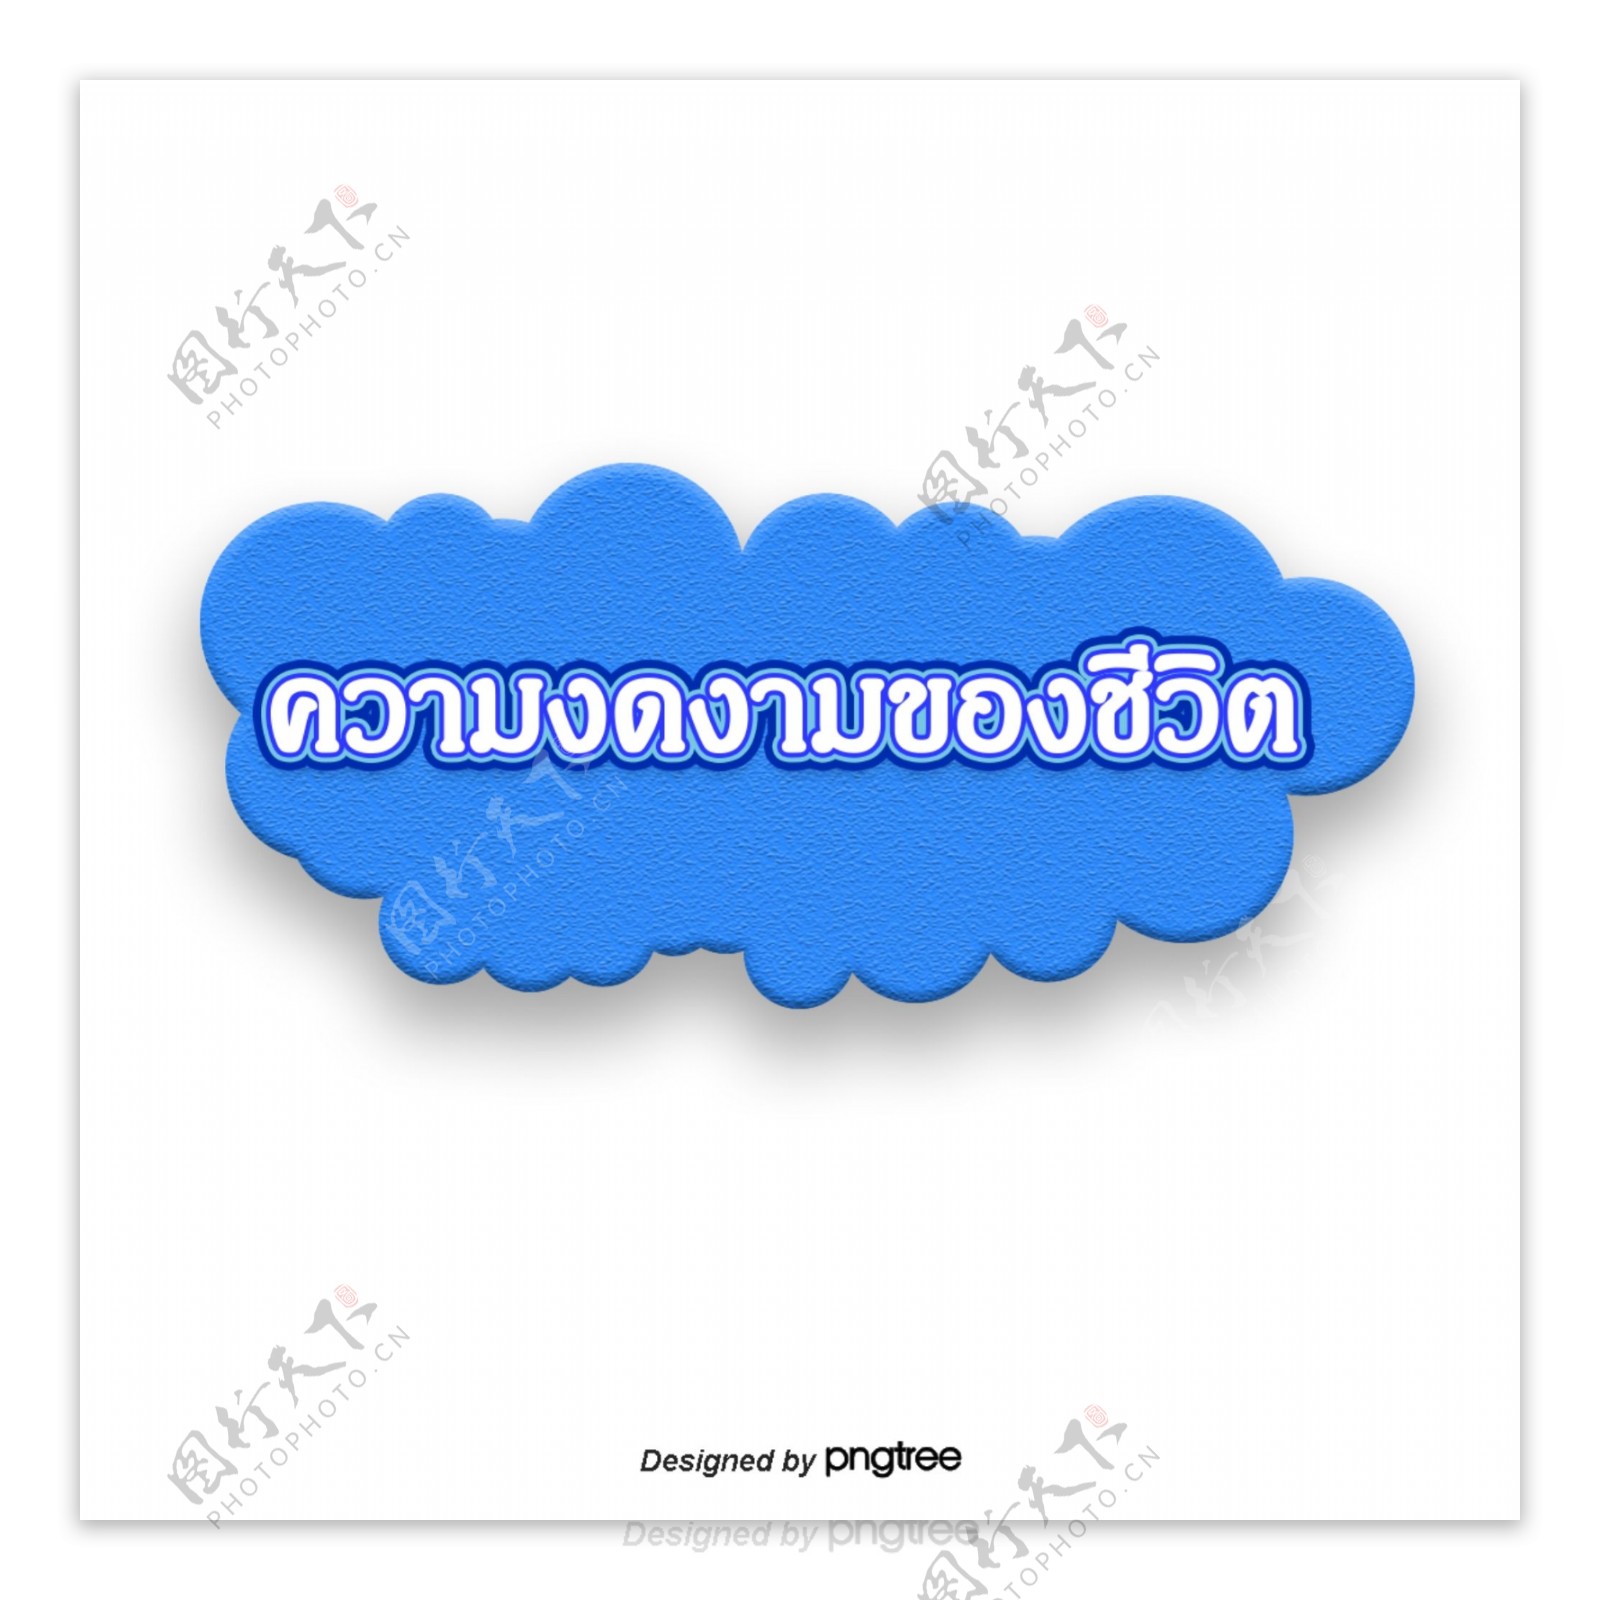 泰国字母的字体优雅生活的蓝云